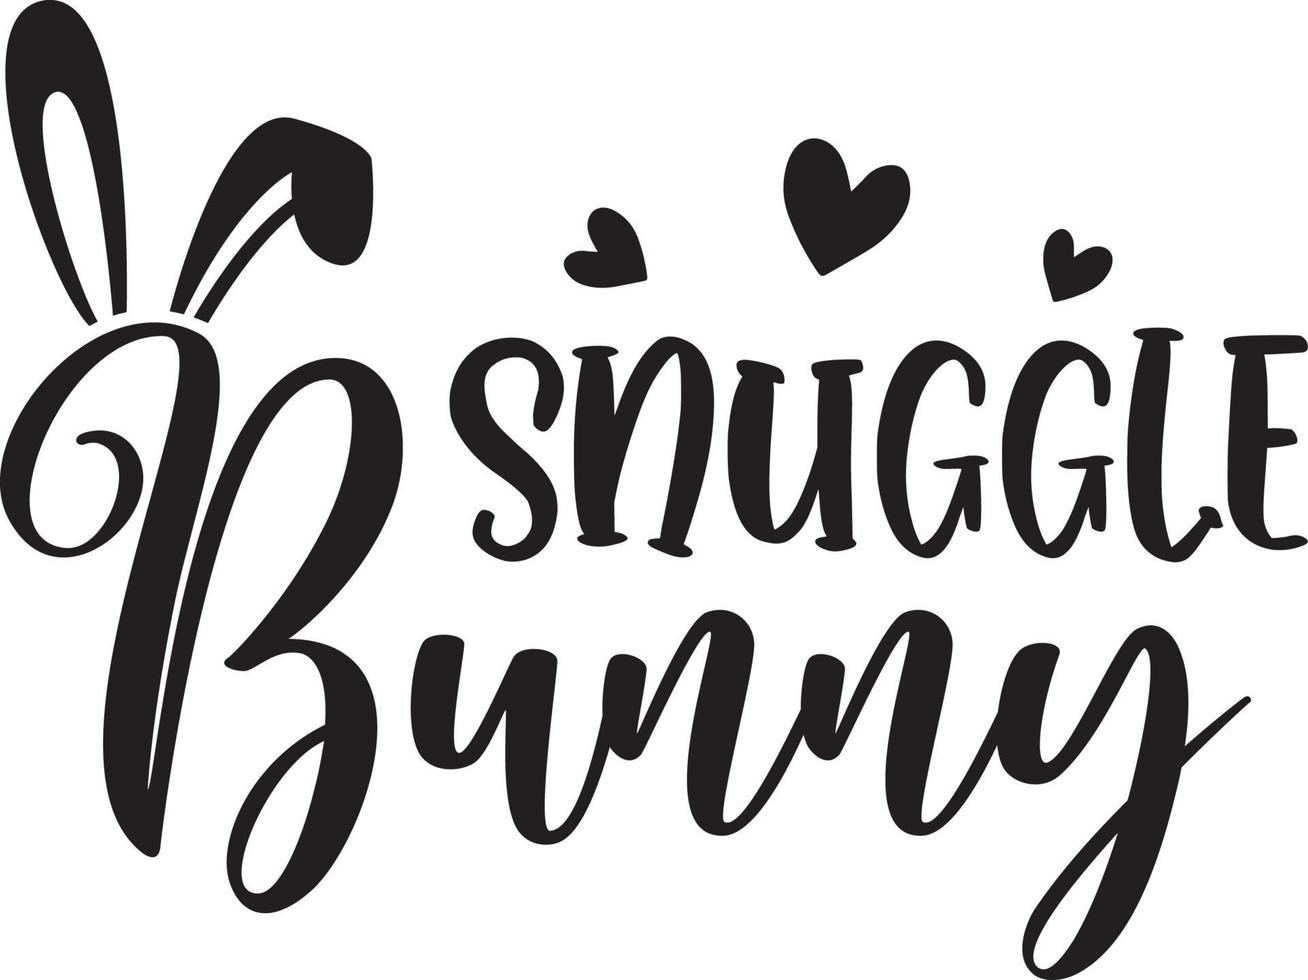 Snuggle Bunny Vector File